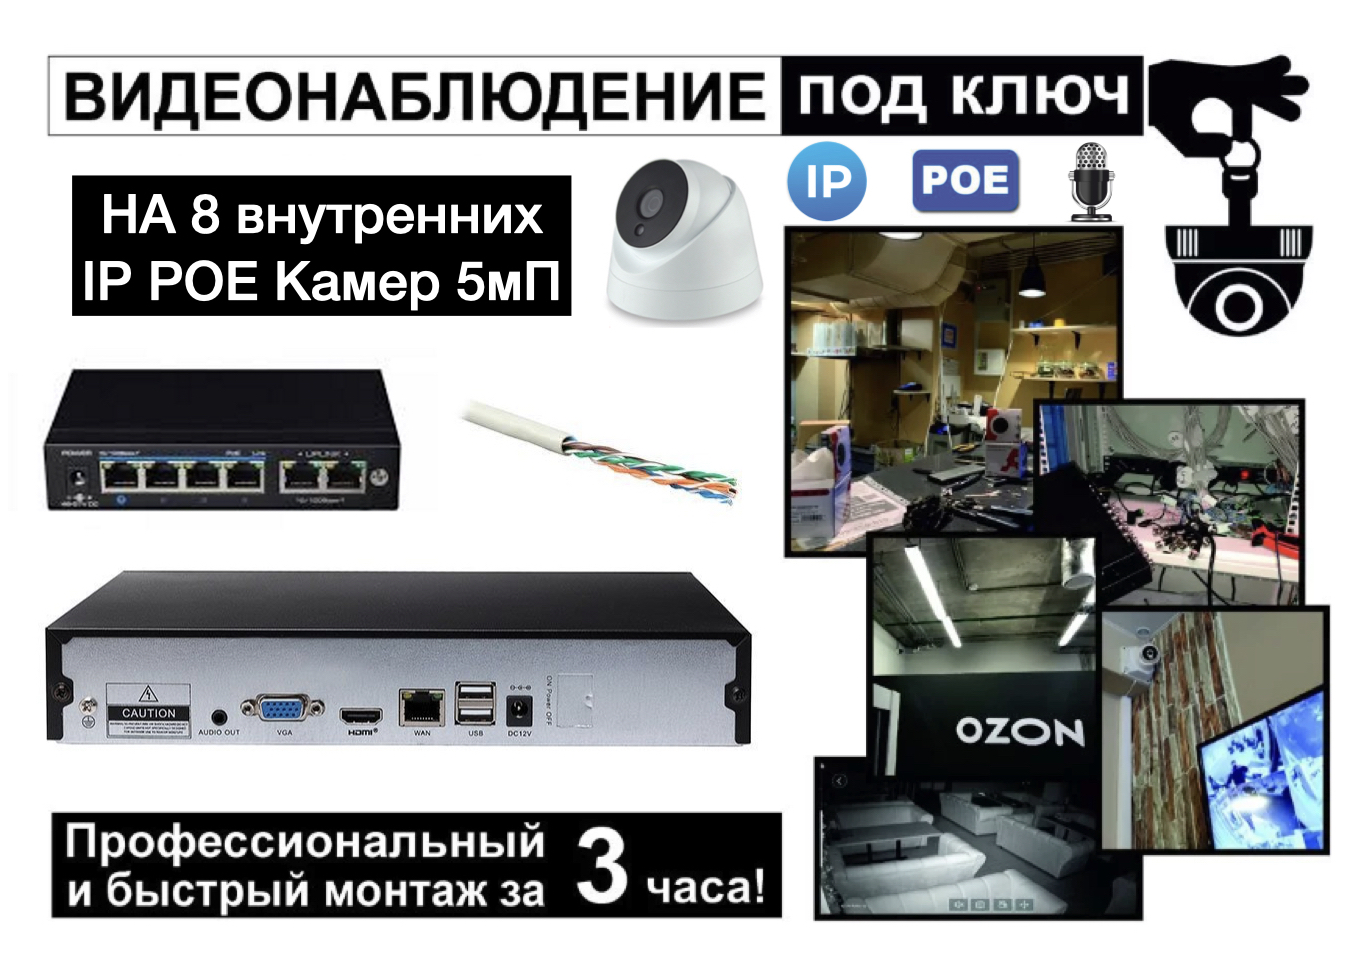 картинка IP Комплект видеонаблюдения на 8 внутренних камеры 5мП + монтаж от магазина Дом Видеонаблюдения (CCTVdom)